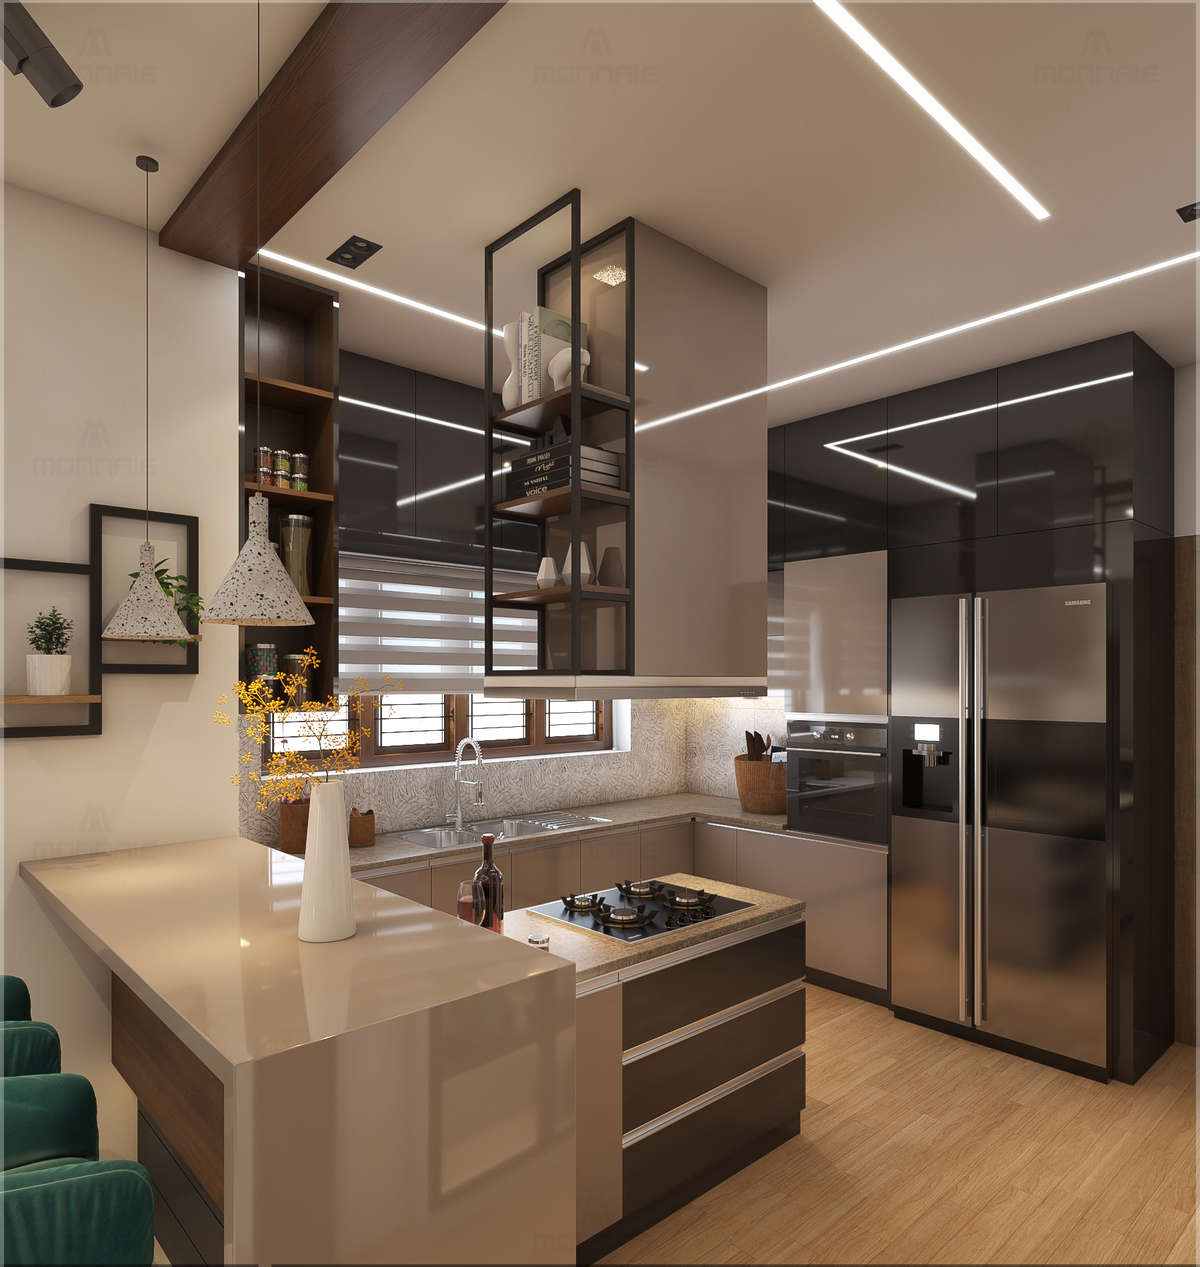 Eye catching design of Kitchen & work area...
#construction #interiordesign #architecturaldesign #homedesigner  #veedu